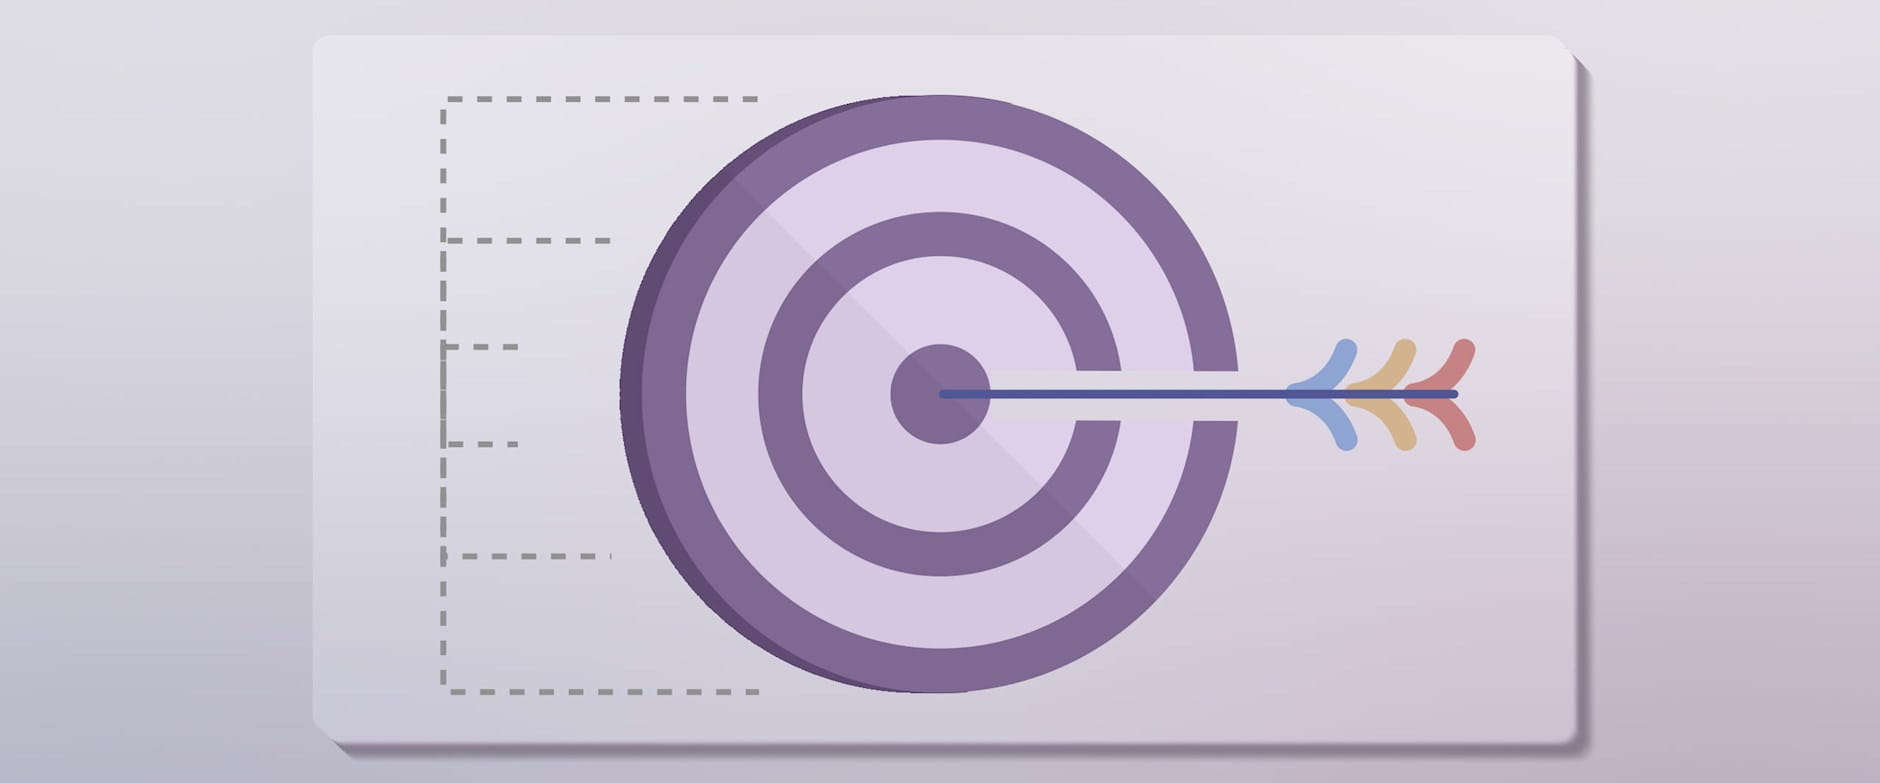 A bullseye with an arrow in the center